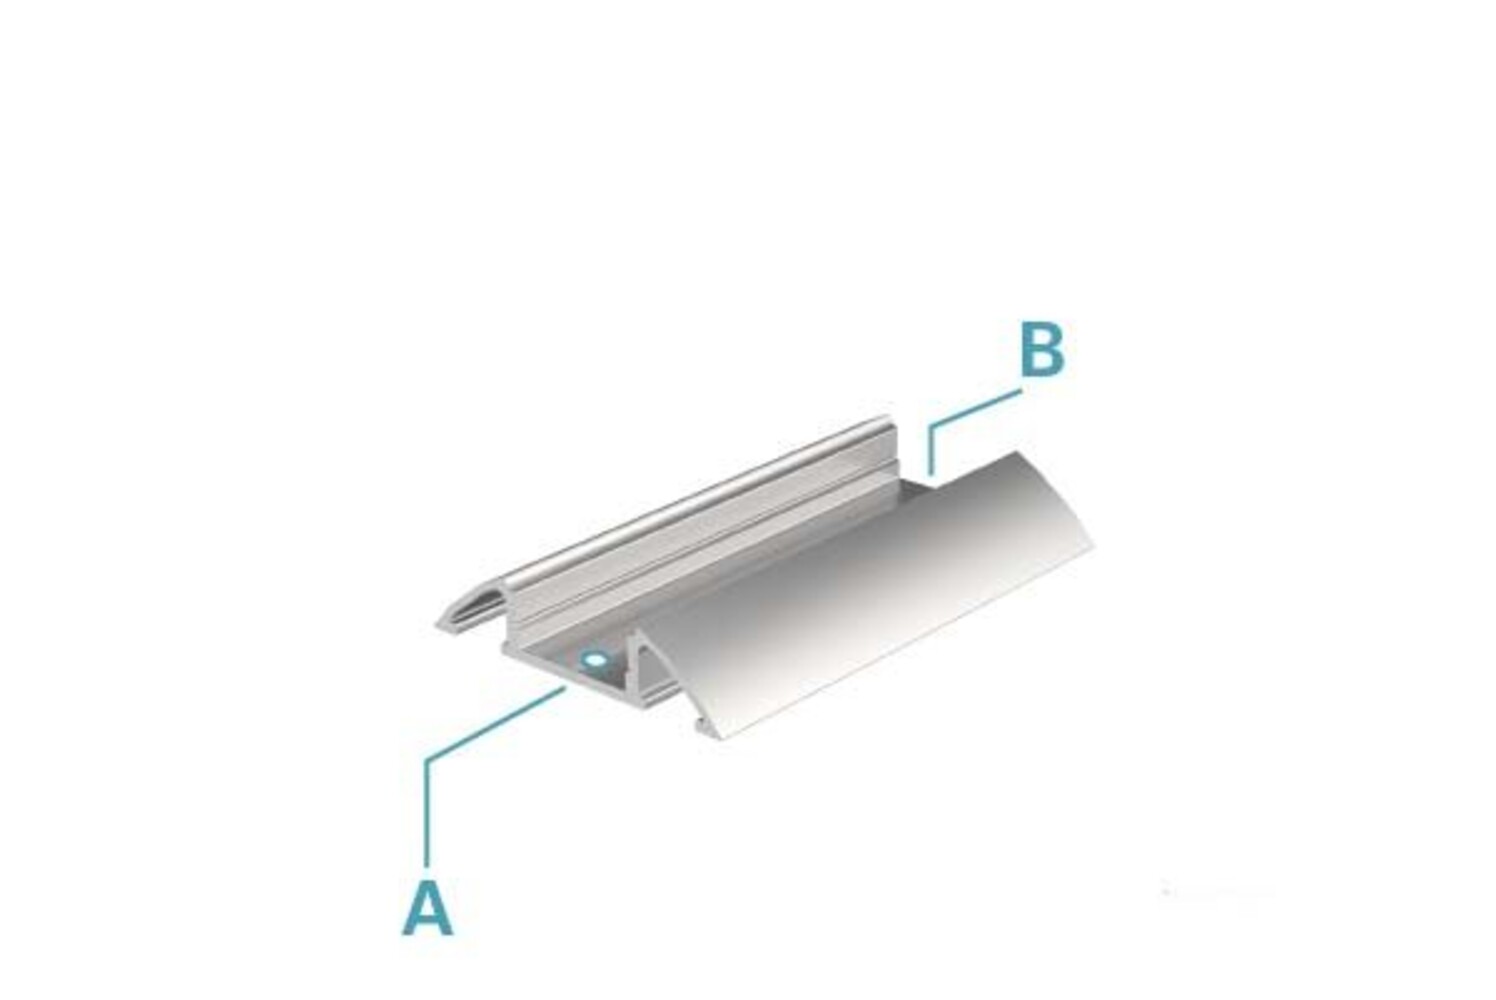 Hochwertiges, matt weißes LED-Profil der Marke Deko-Light, ideal für 10 - 11,3 mm breite LED-Stripes